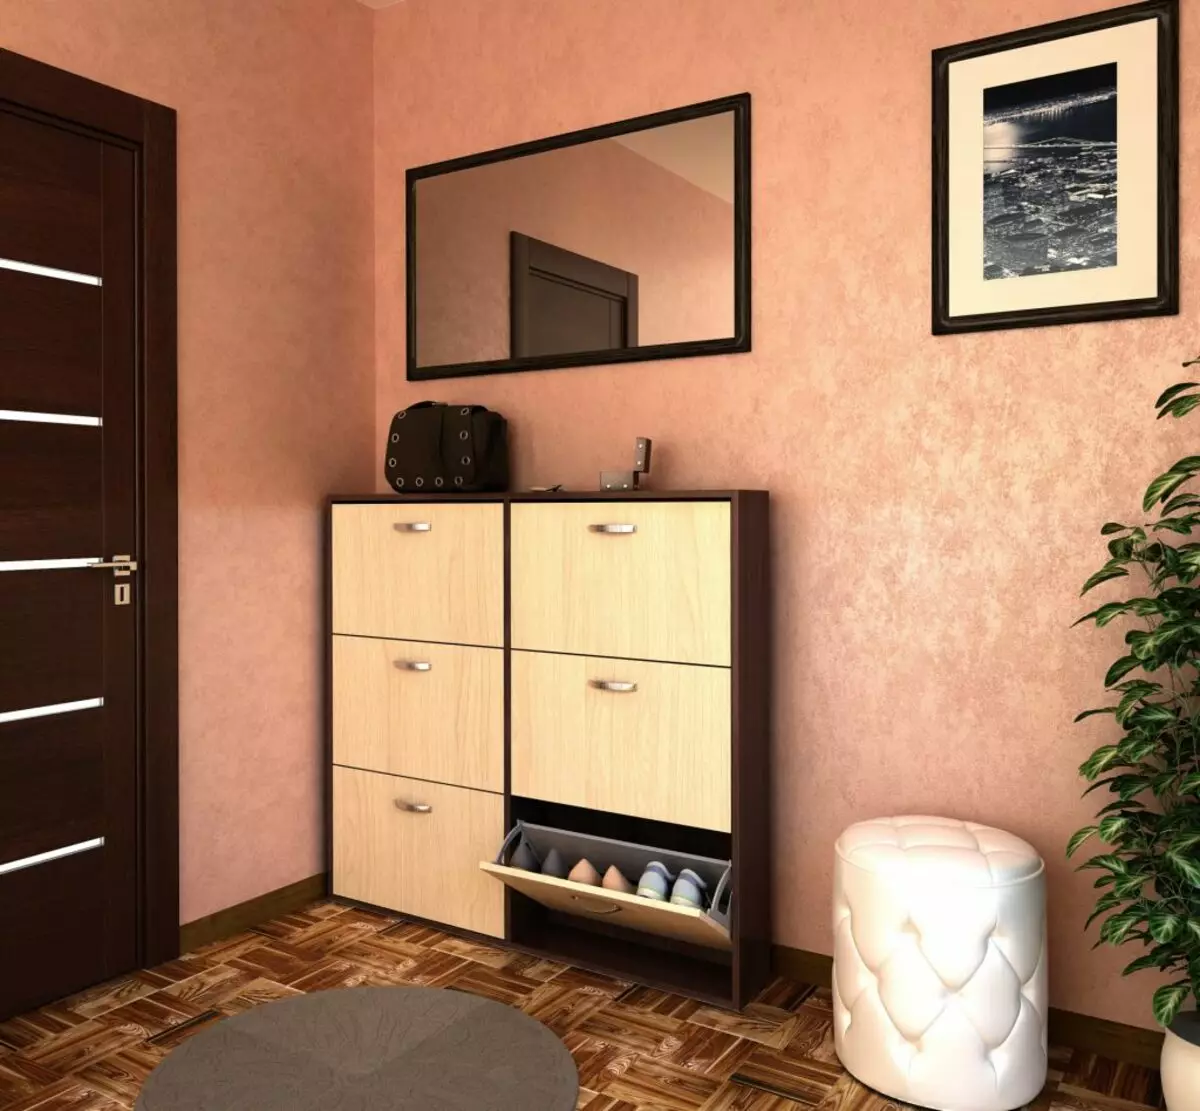 在Khrushchev公寓的一個小走廊註冊：在房間裡的視覺增加